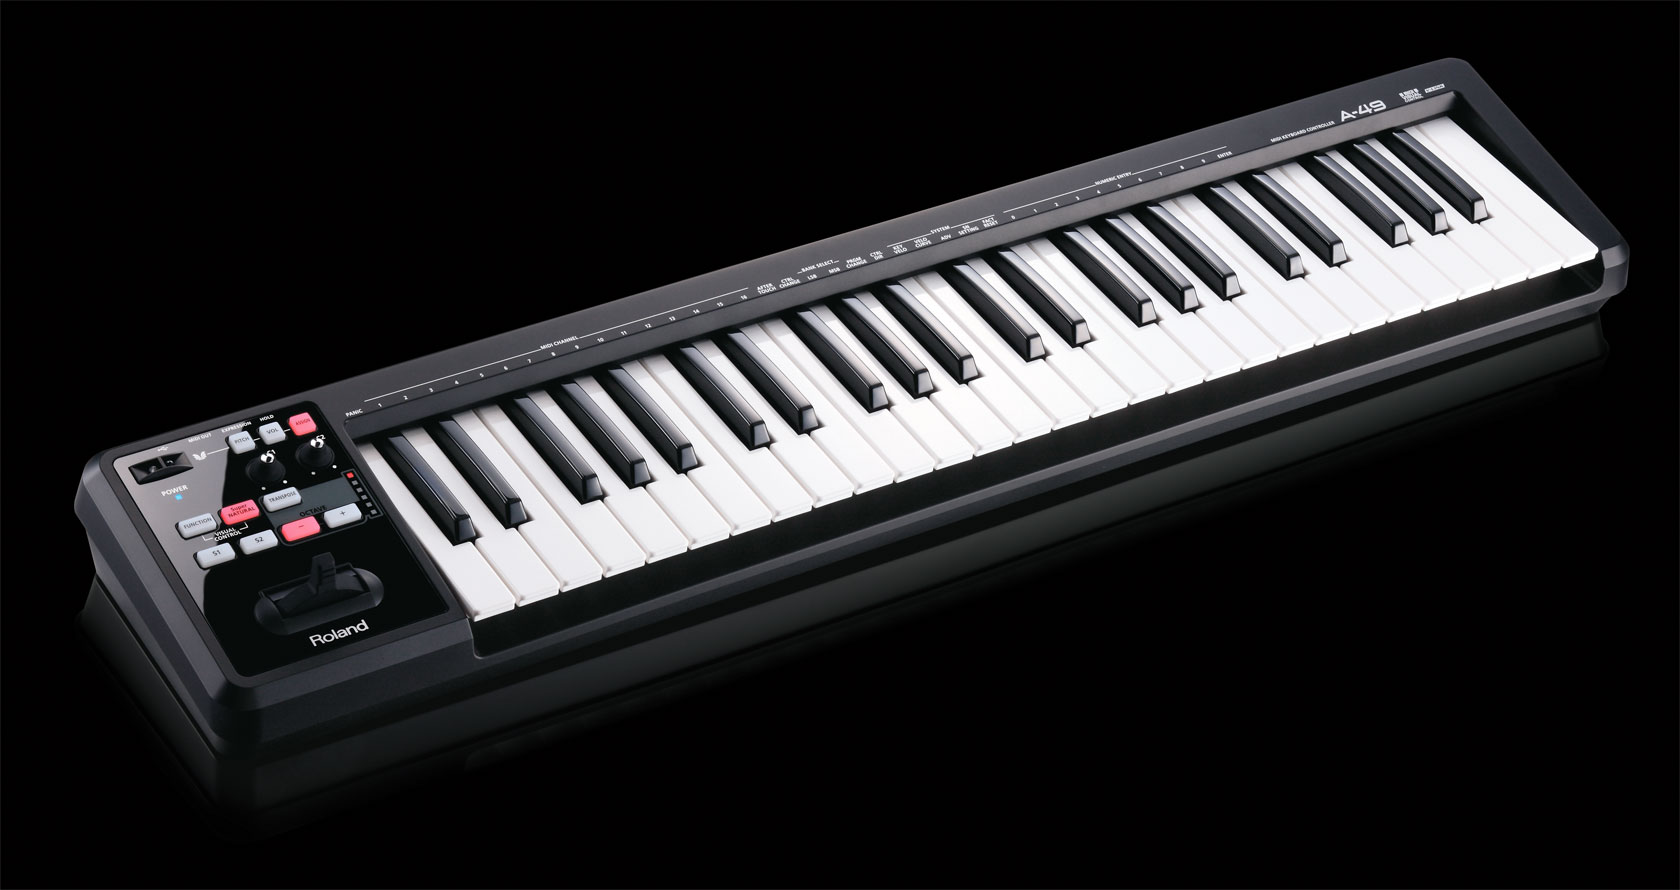 罗兰 Roland A-49 A49 MIDI键盘控制器